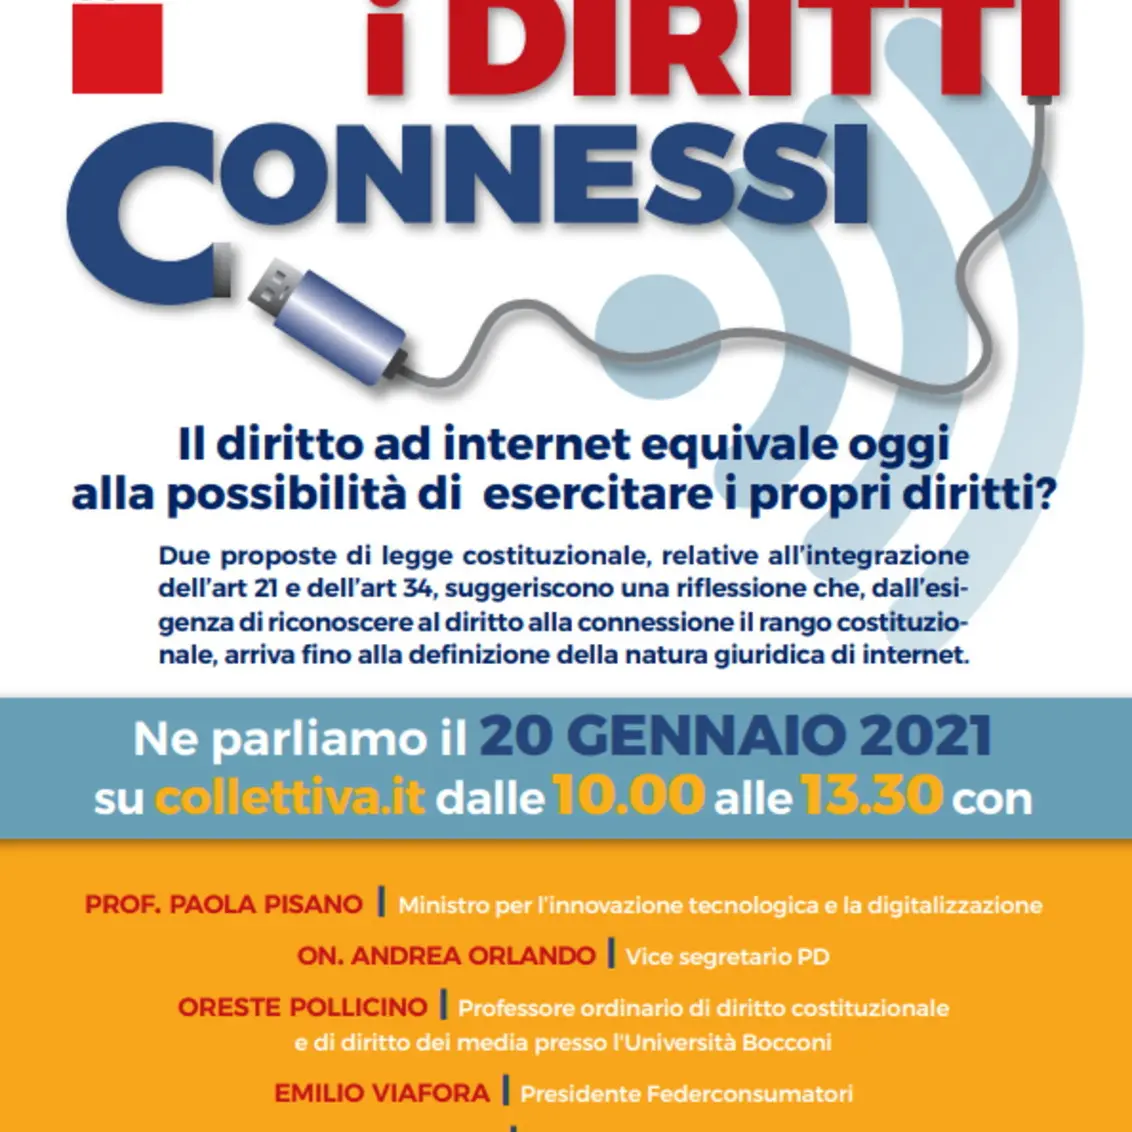 Iniziativa Cgil “I diritti connessi”, con Pisano e Landini